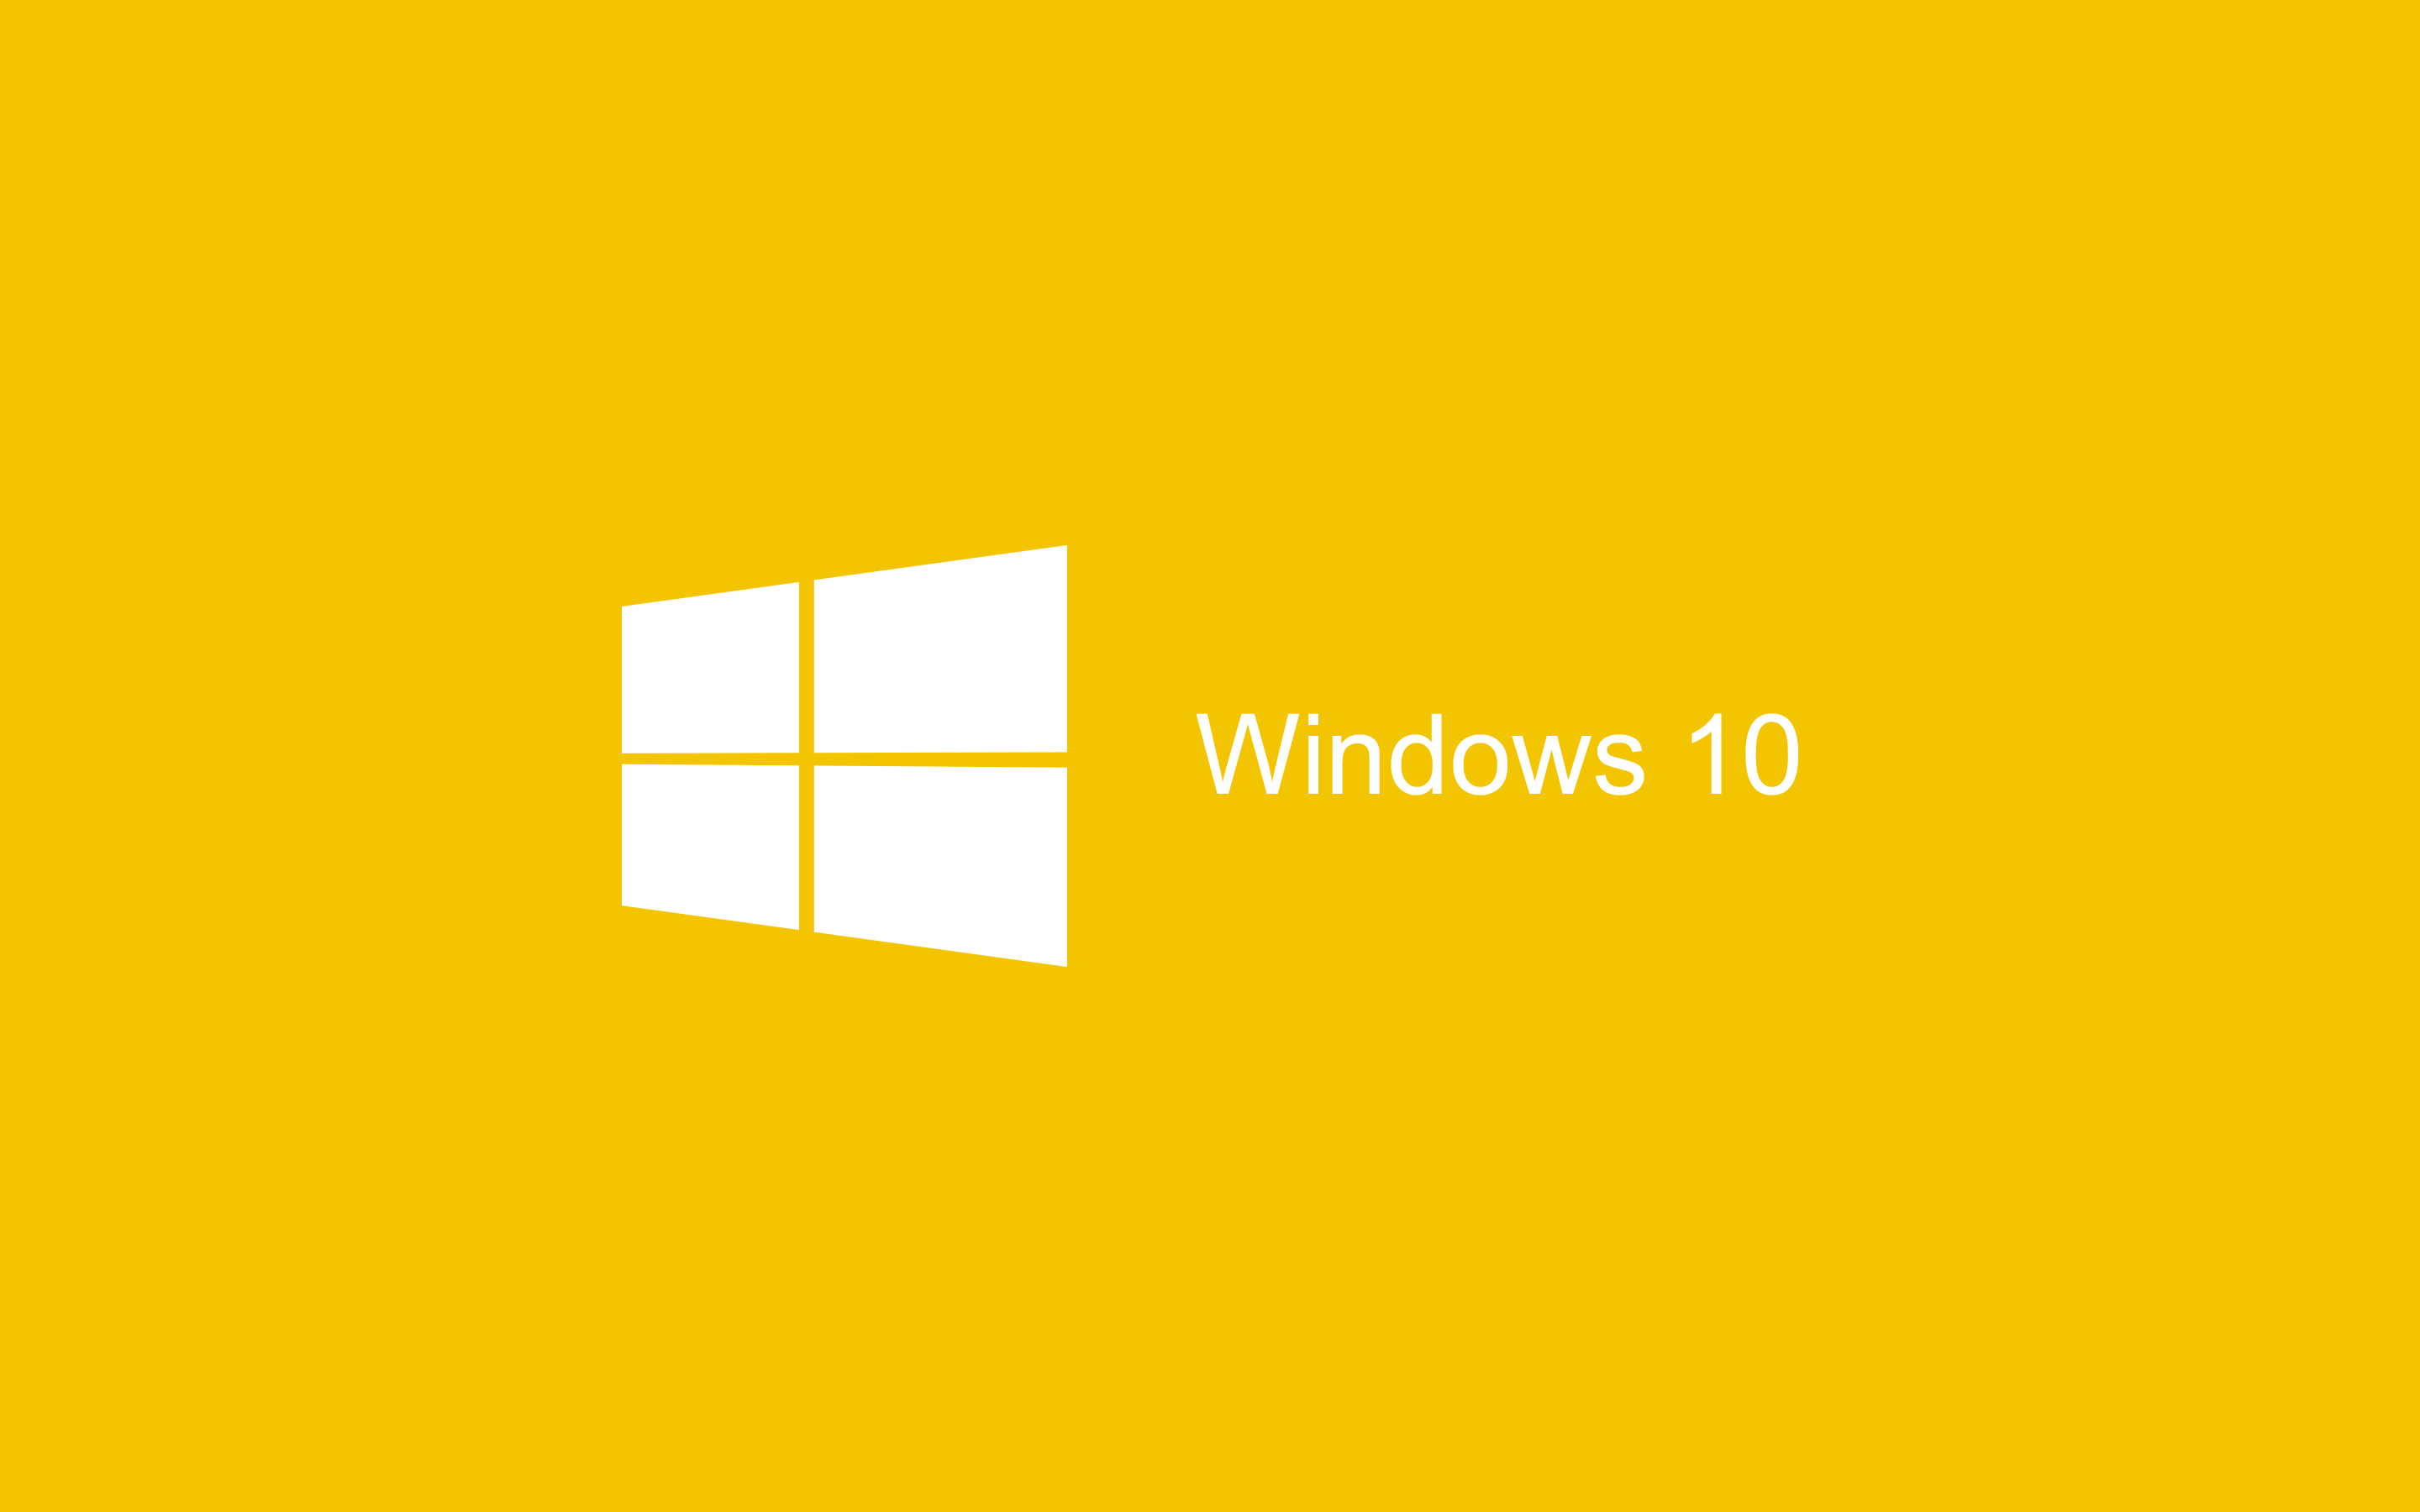 Yellow Wallpaper Windows 10 là sự lựa chọn hoàn hảo cho những ai yêu thích màu vàng. Với thiết kế độc đáo và tinh tế, bạn sẽ không còn thấy nhàm chán khi sử dụng máy tính nữa. Hãy nhấp chuột vào hình ảnh để tận hưởng trải nghiệm này ngay nào.